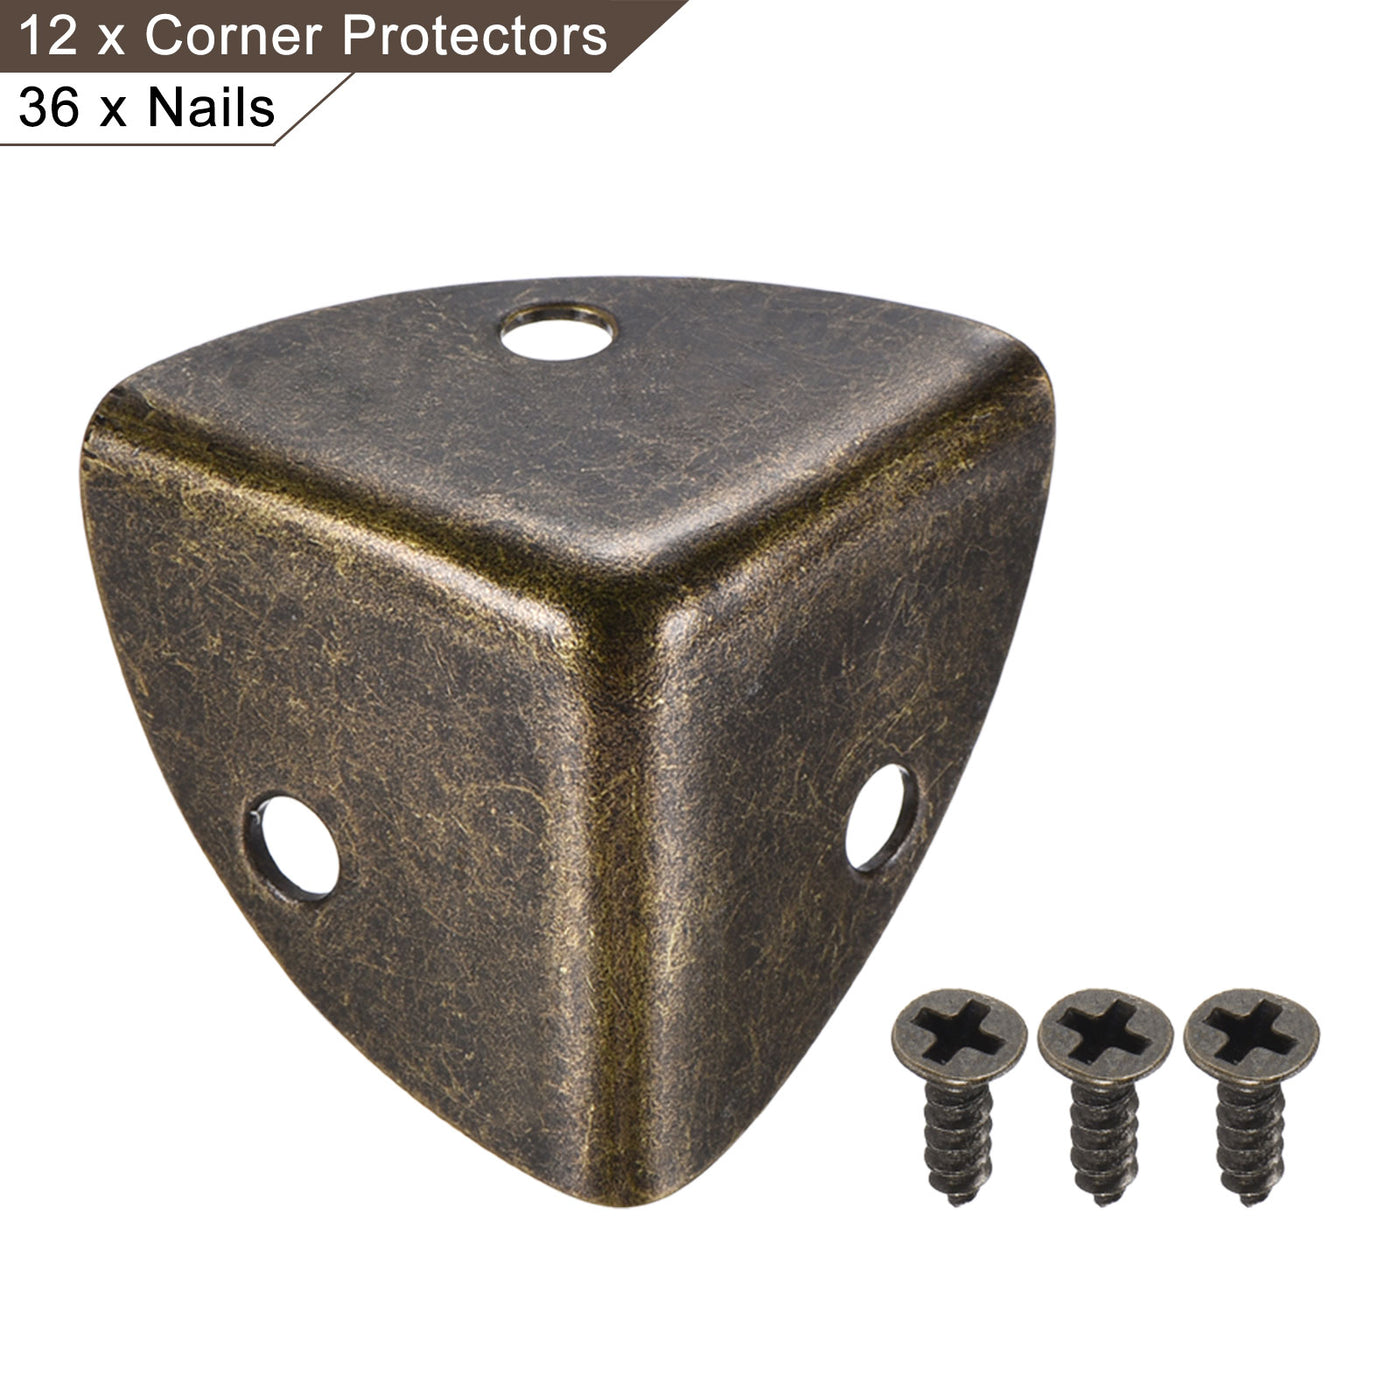 uxcell Uxcell 26x26x26mm Metal Box Corner Protectors Edge Guard Bronze Tone 12pcs